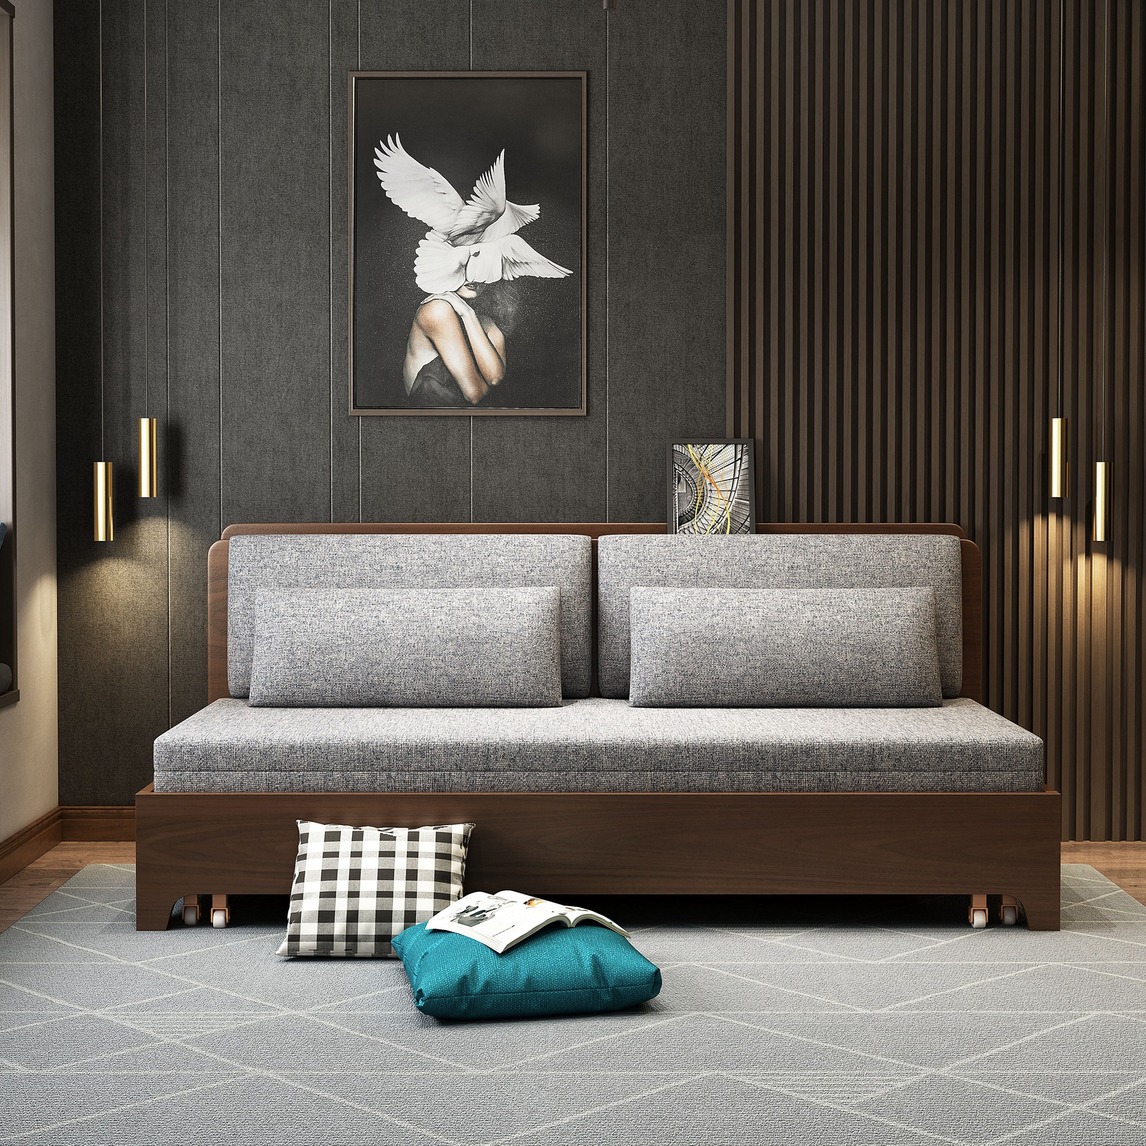 10款小户型设计妙用沙发床图片-中国木业网